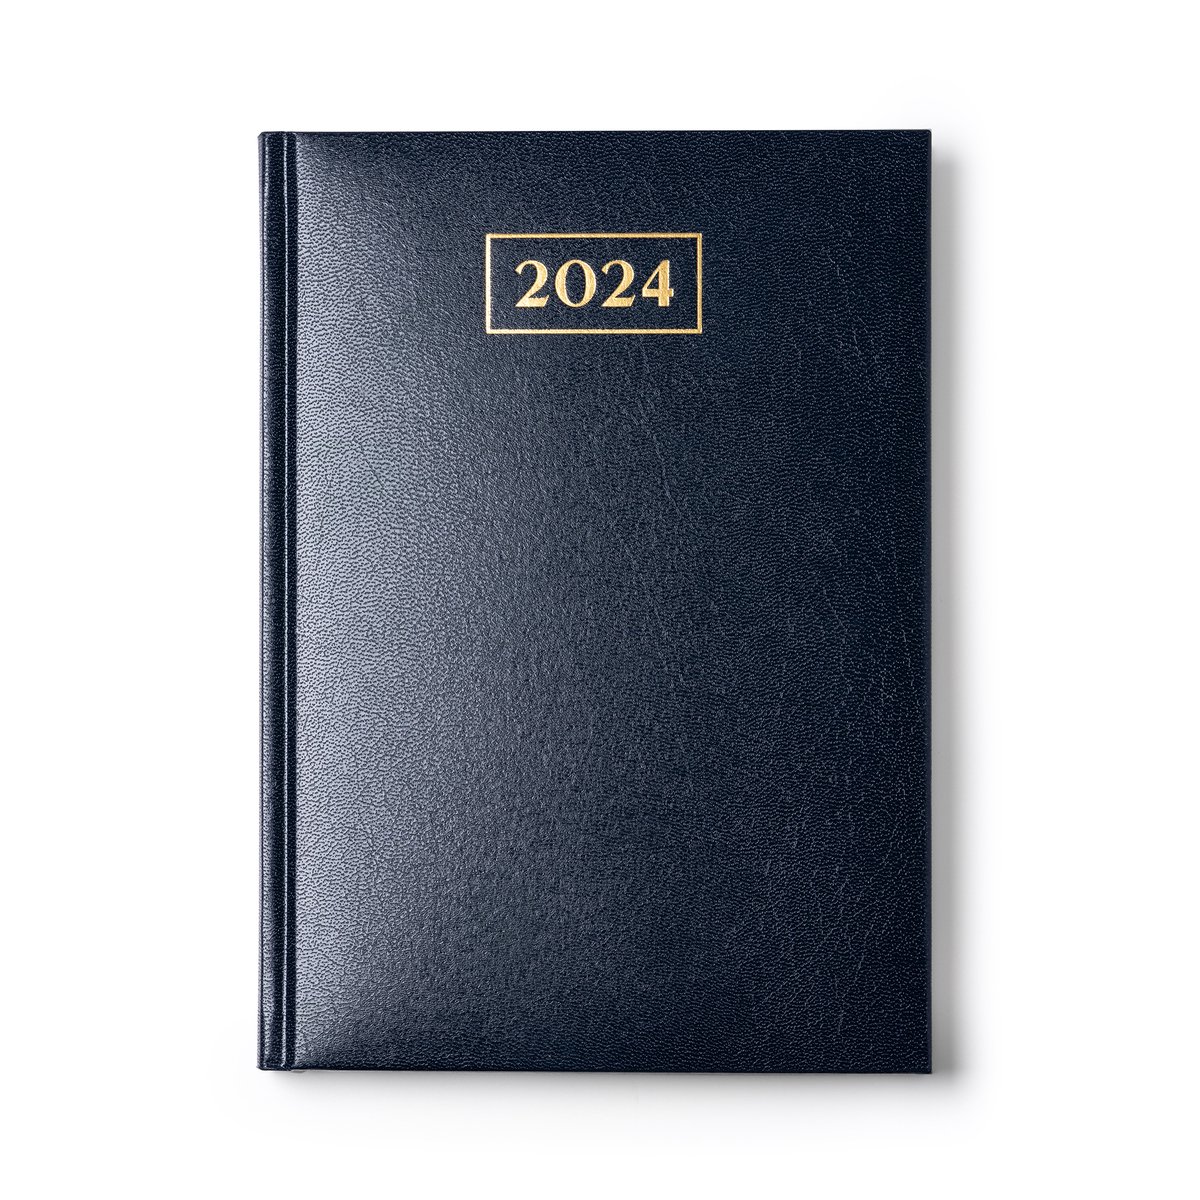  Agenda journalier 2024: une page par jour 12 mois de janvier  2024 à décembre 2024, Format A4, Noir (French Edition): Edition, Mino: Books